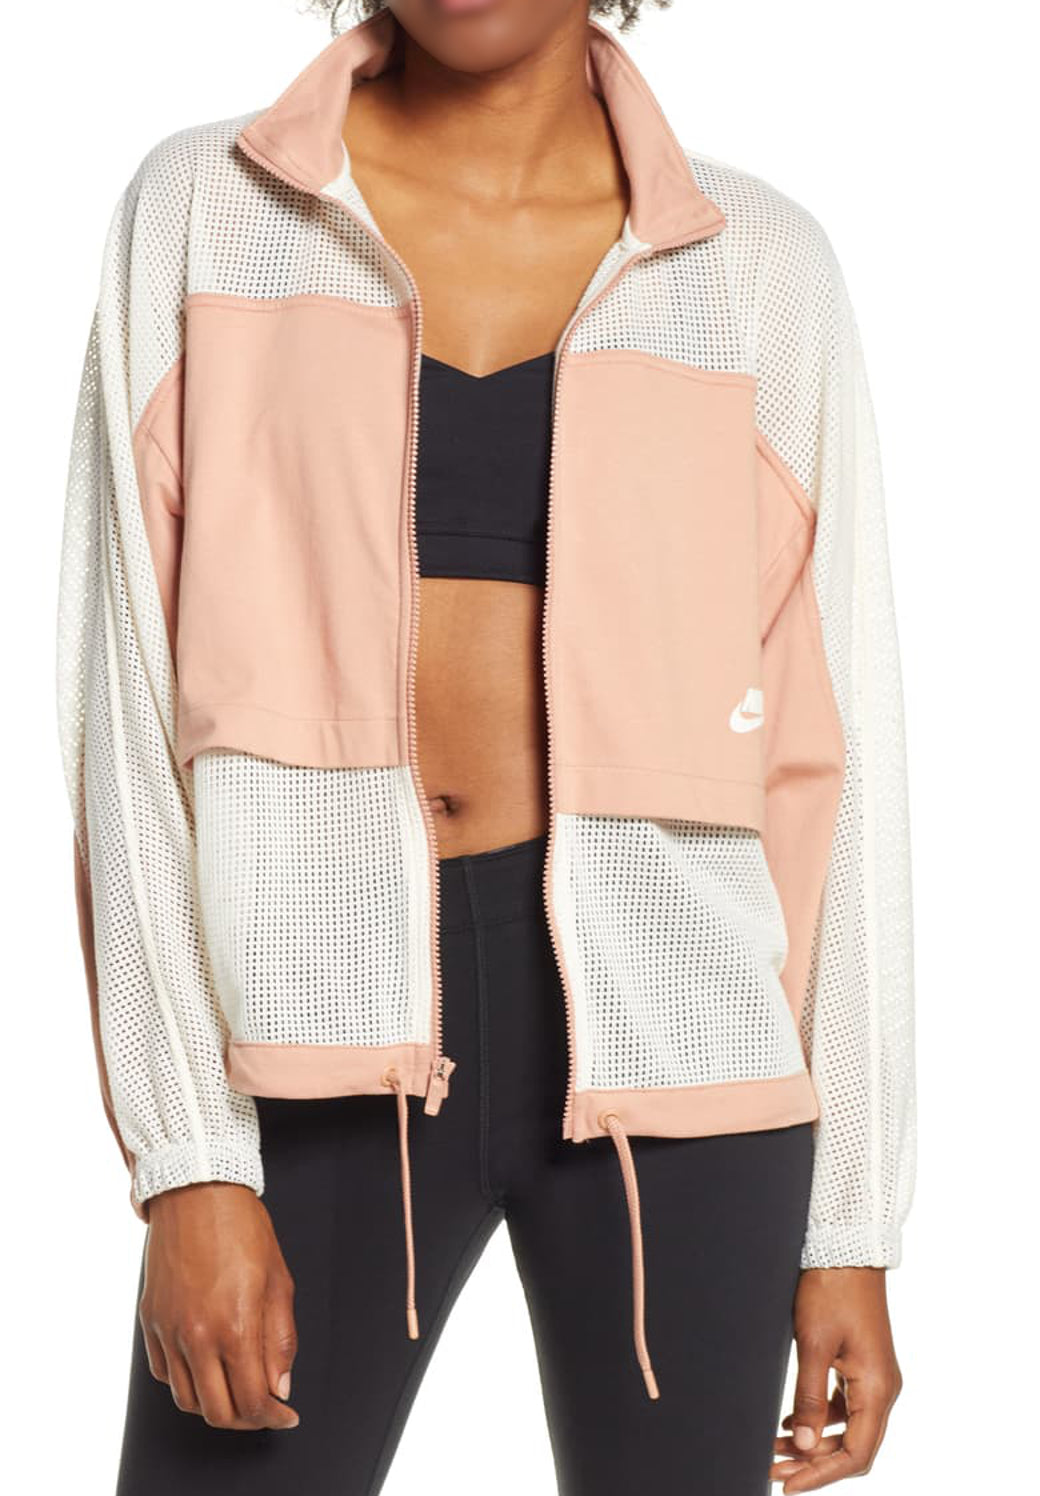 Nike Womens Sportswear Mesh Jacket | eBay